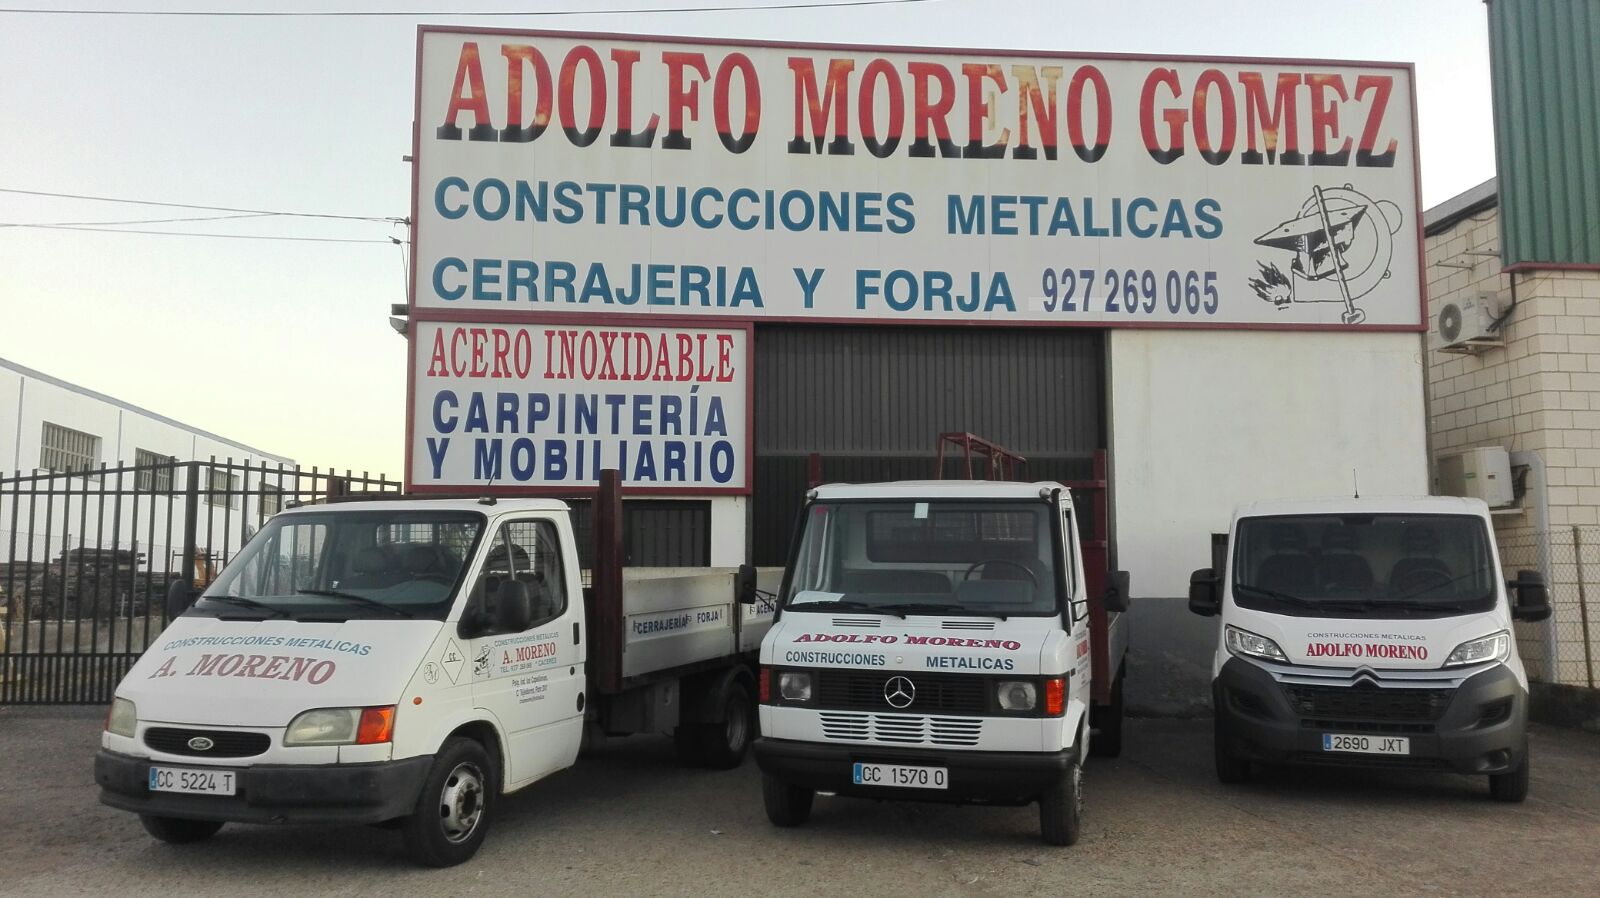 Construcciones Metálicas Adolfo Moreno